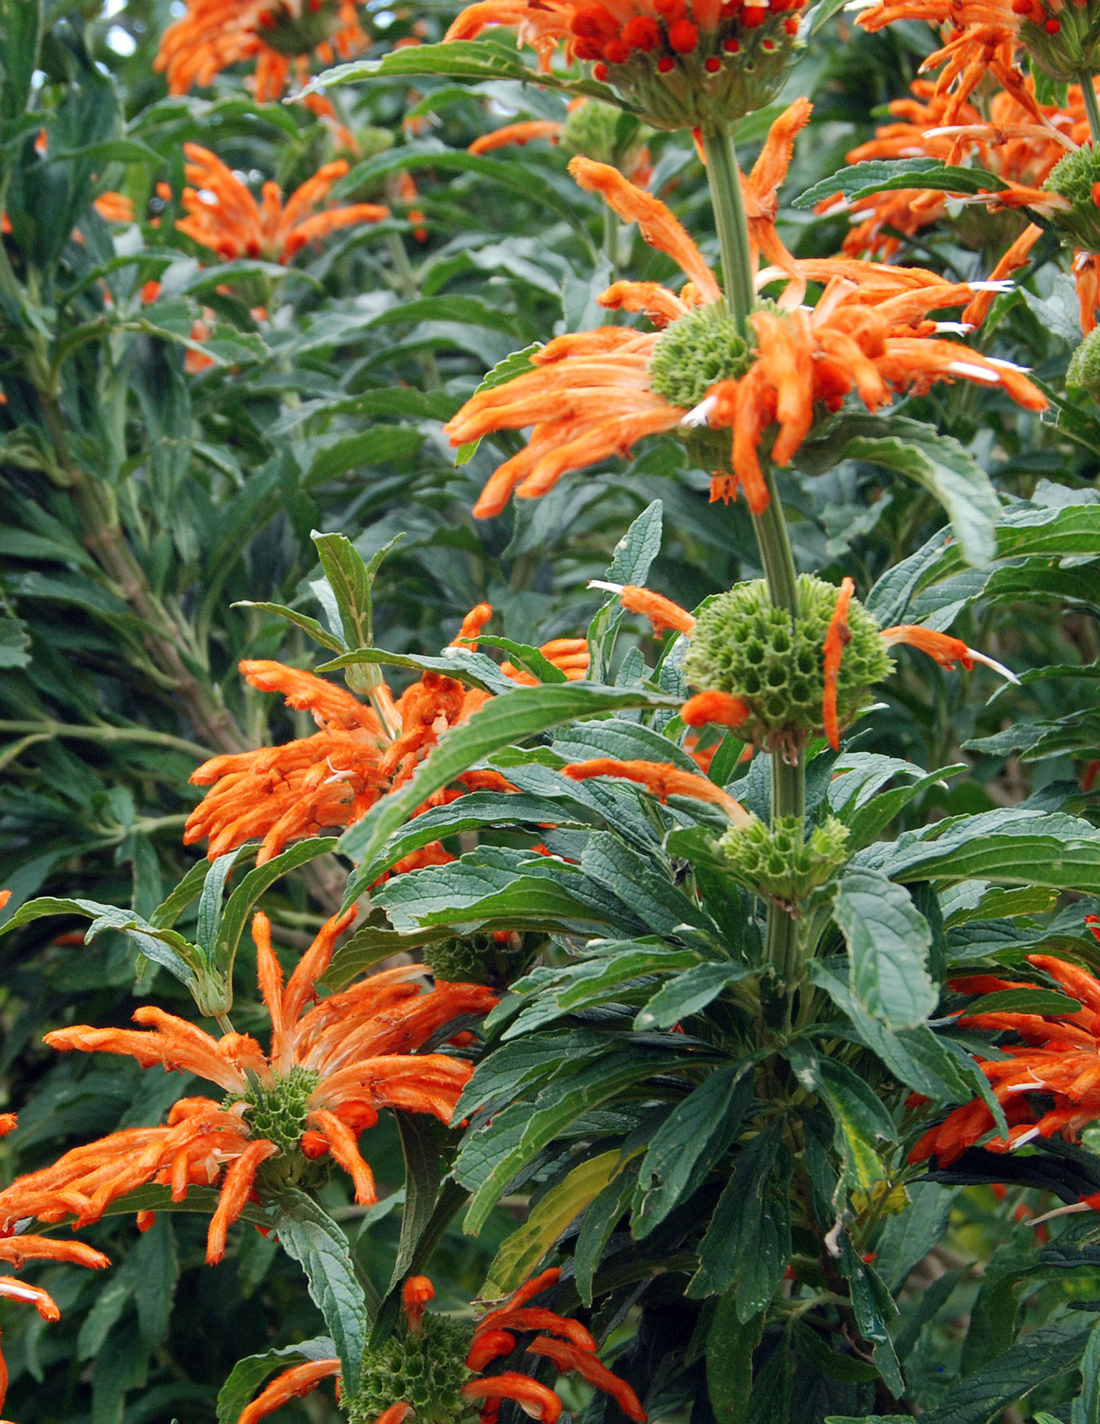 Lion’s Ear plant with vibrant orange flowers